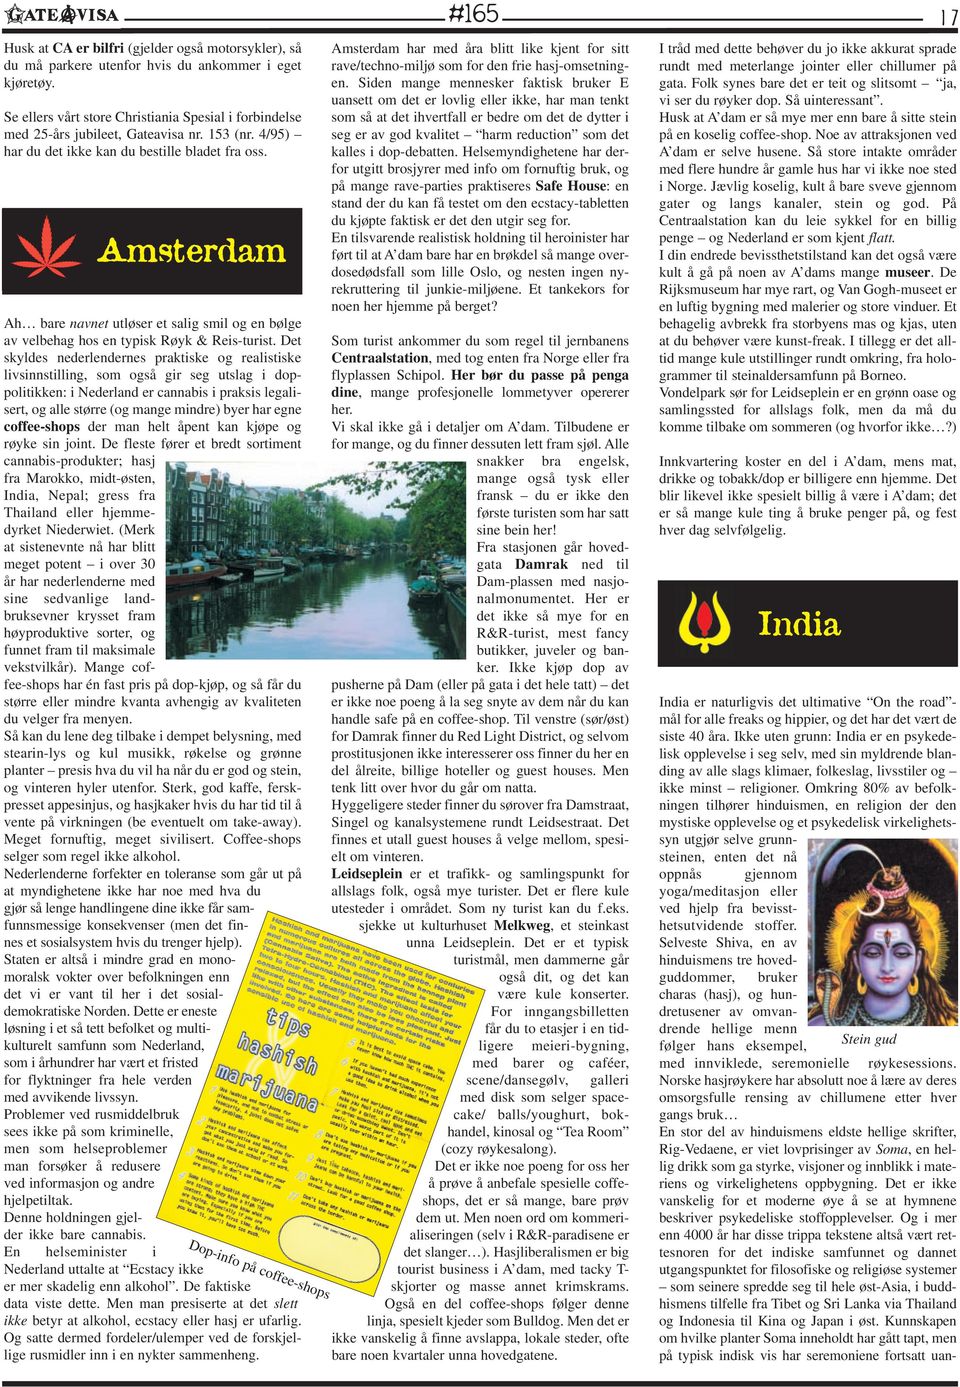 Det skyldes nederlendernes praktiske og realistiske livsinnstilling, som også gir seg utslag i doppolitikken: i Nederland er cannabis i praksis legalisert, og alle større (og mange mindre) byer har